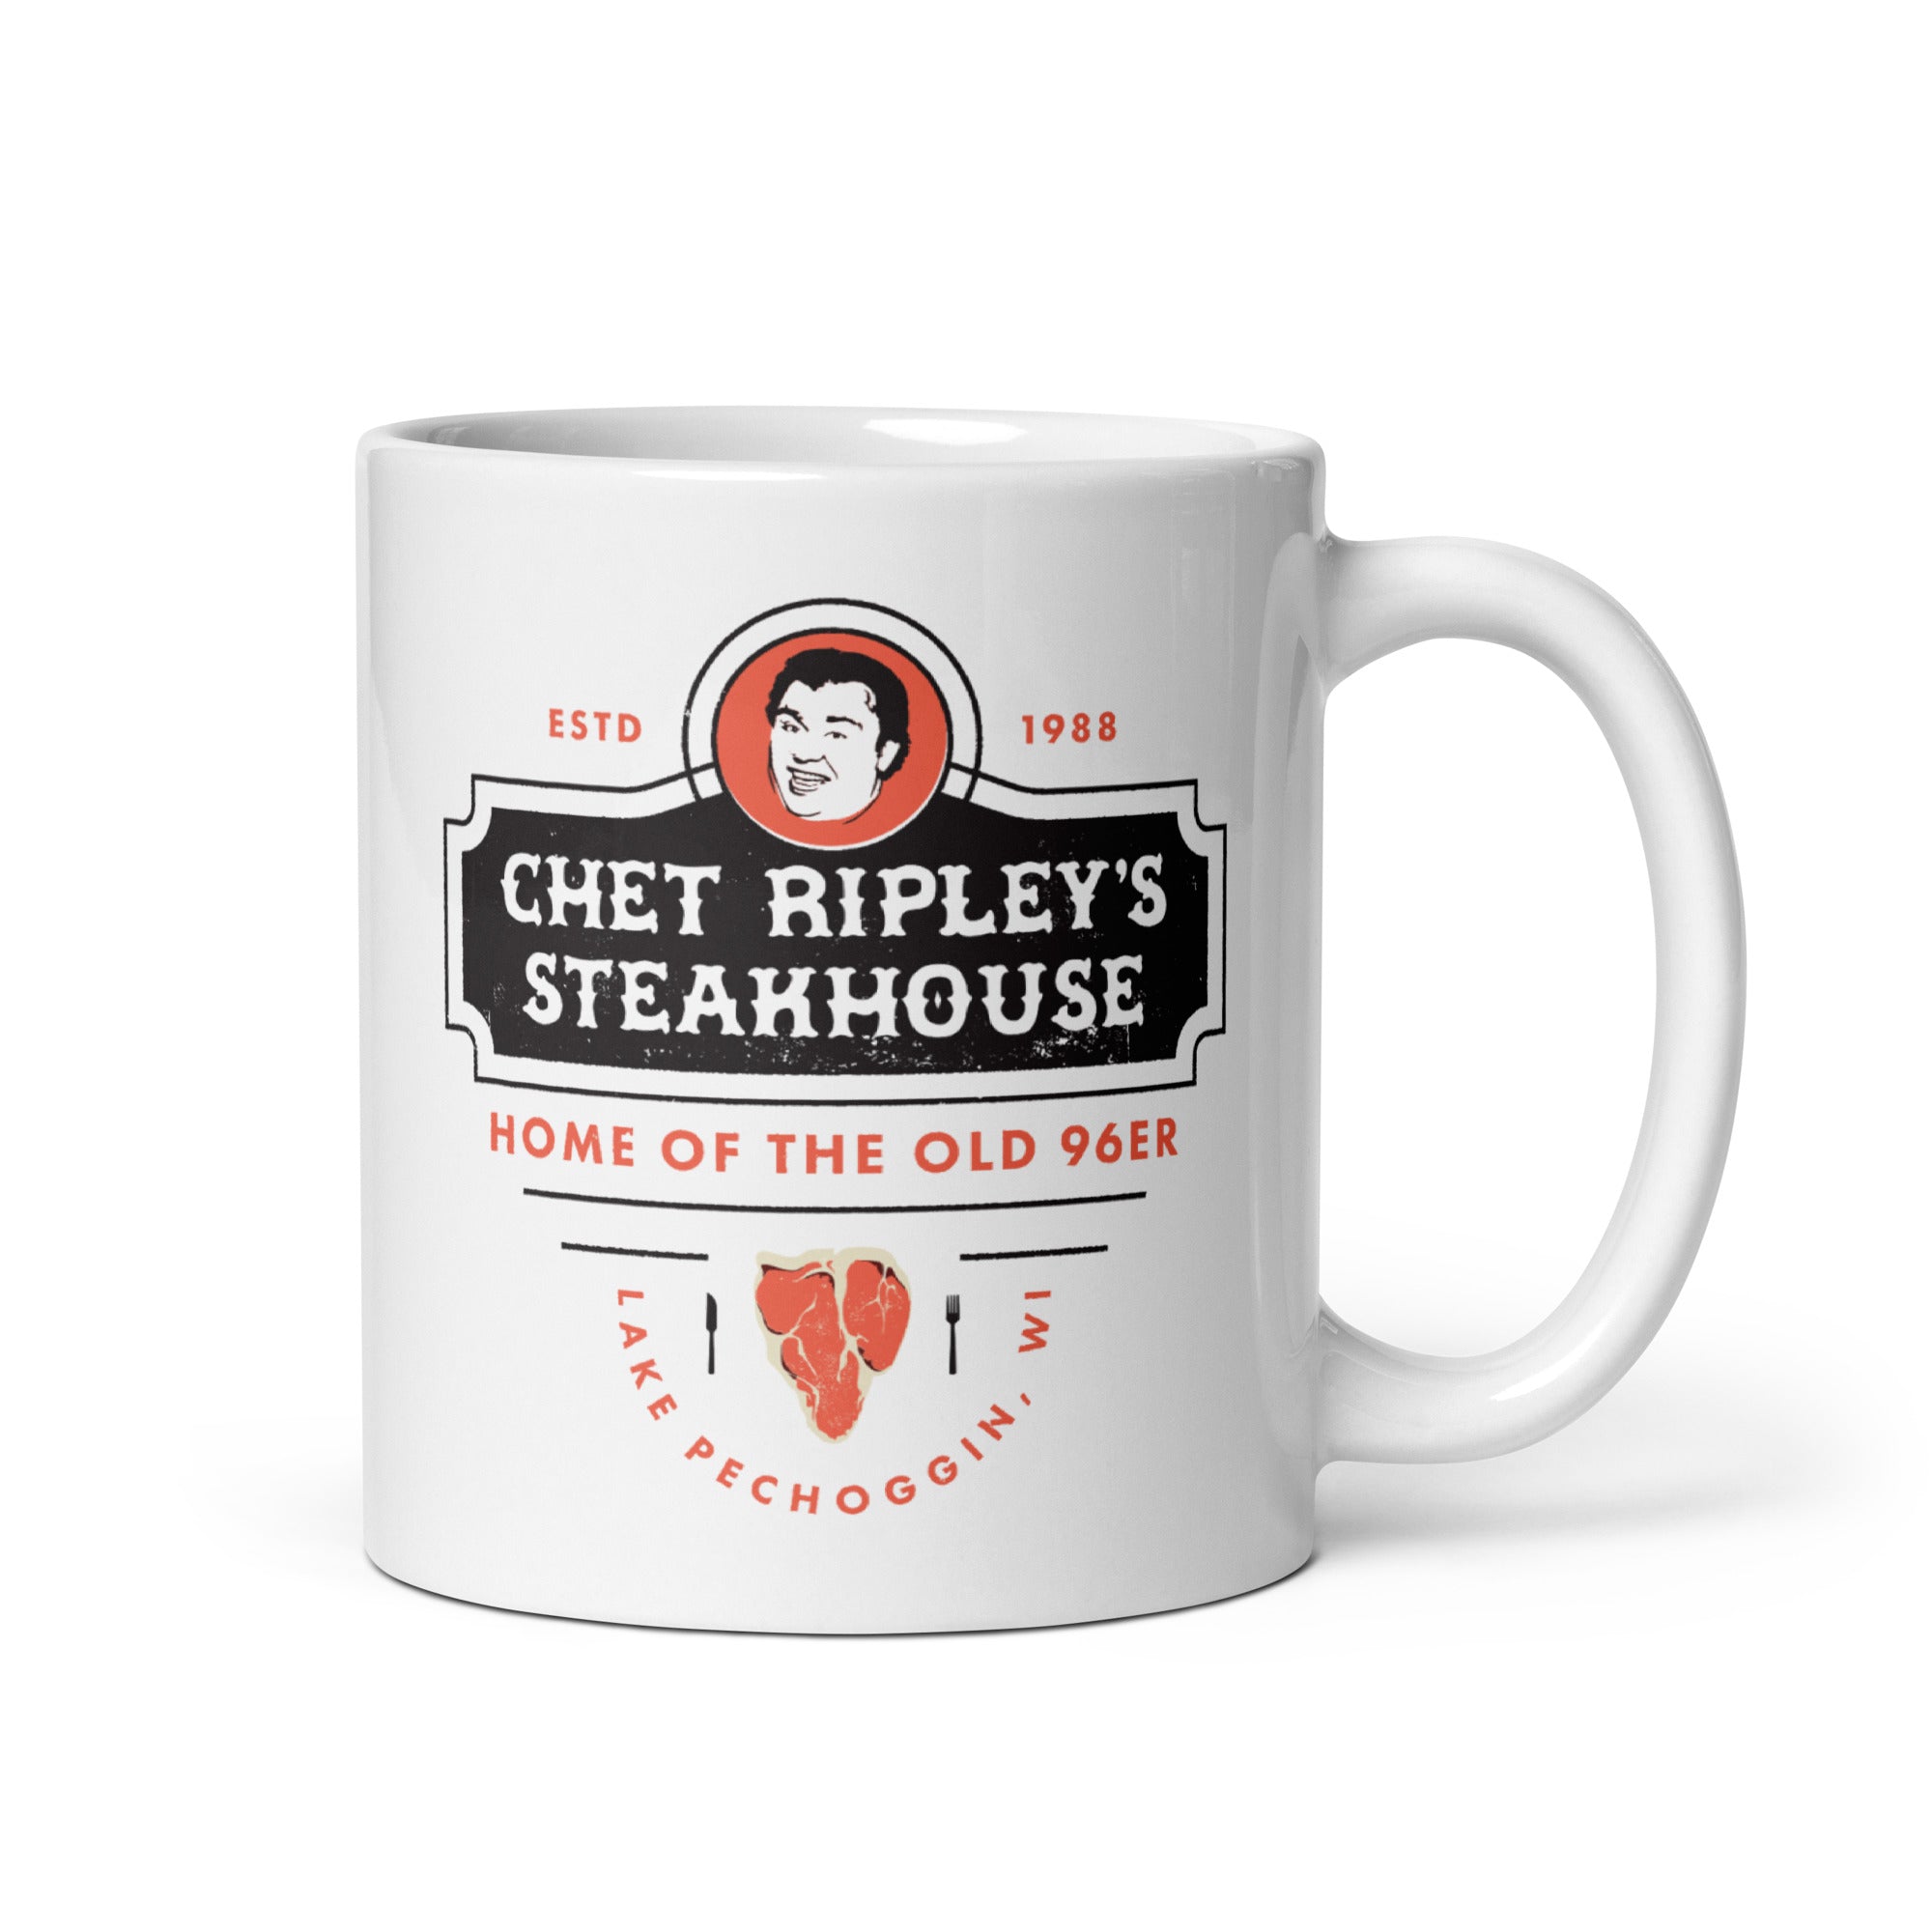 Chet Ripley's Steakhouse - Old 96er - 11oz Coffee Mug